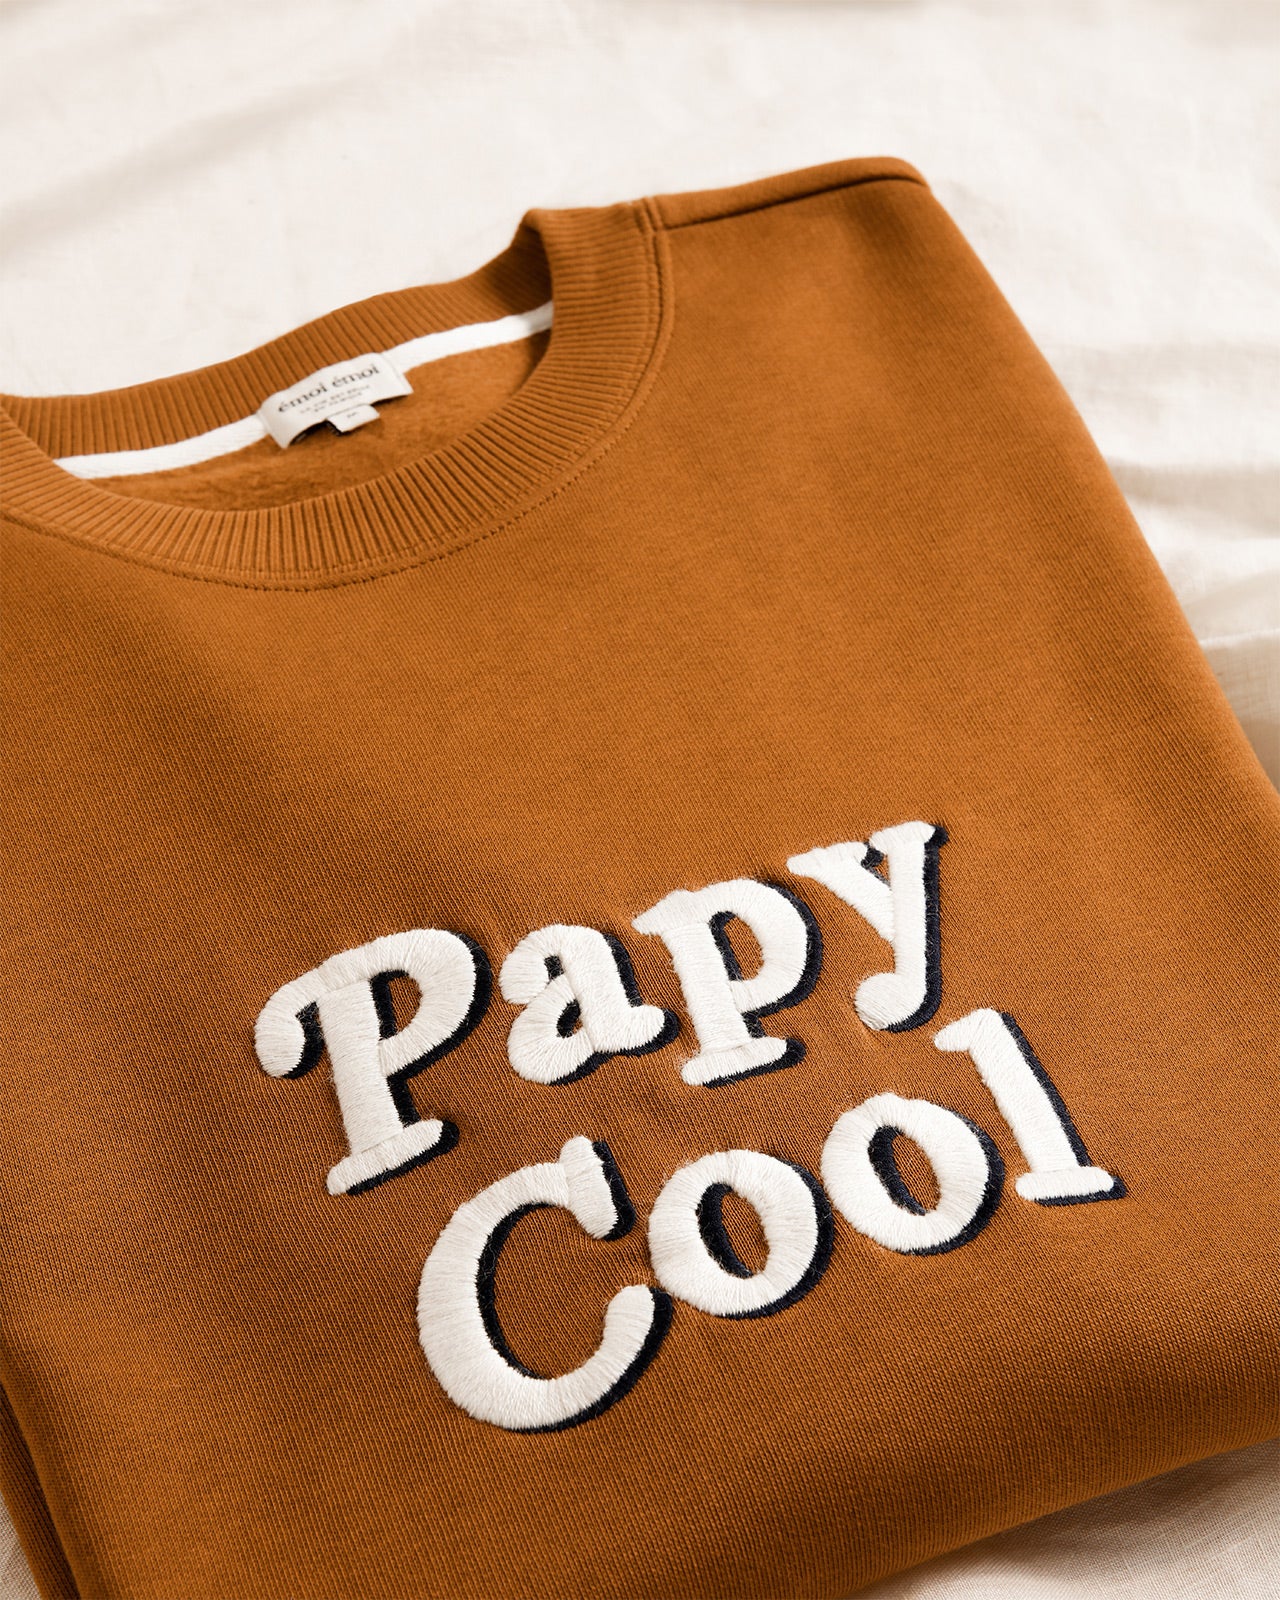 Le tablier Papy cool en coton bio - vert sapin – émoi émoi